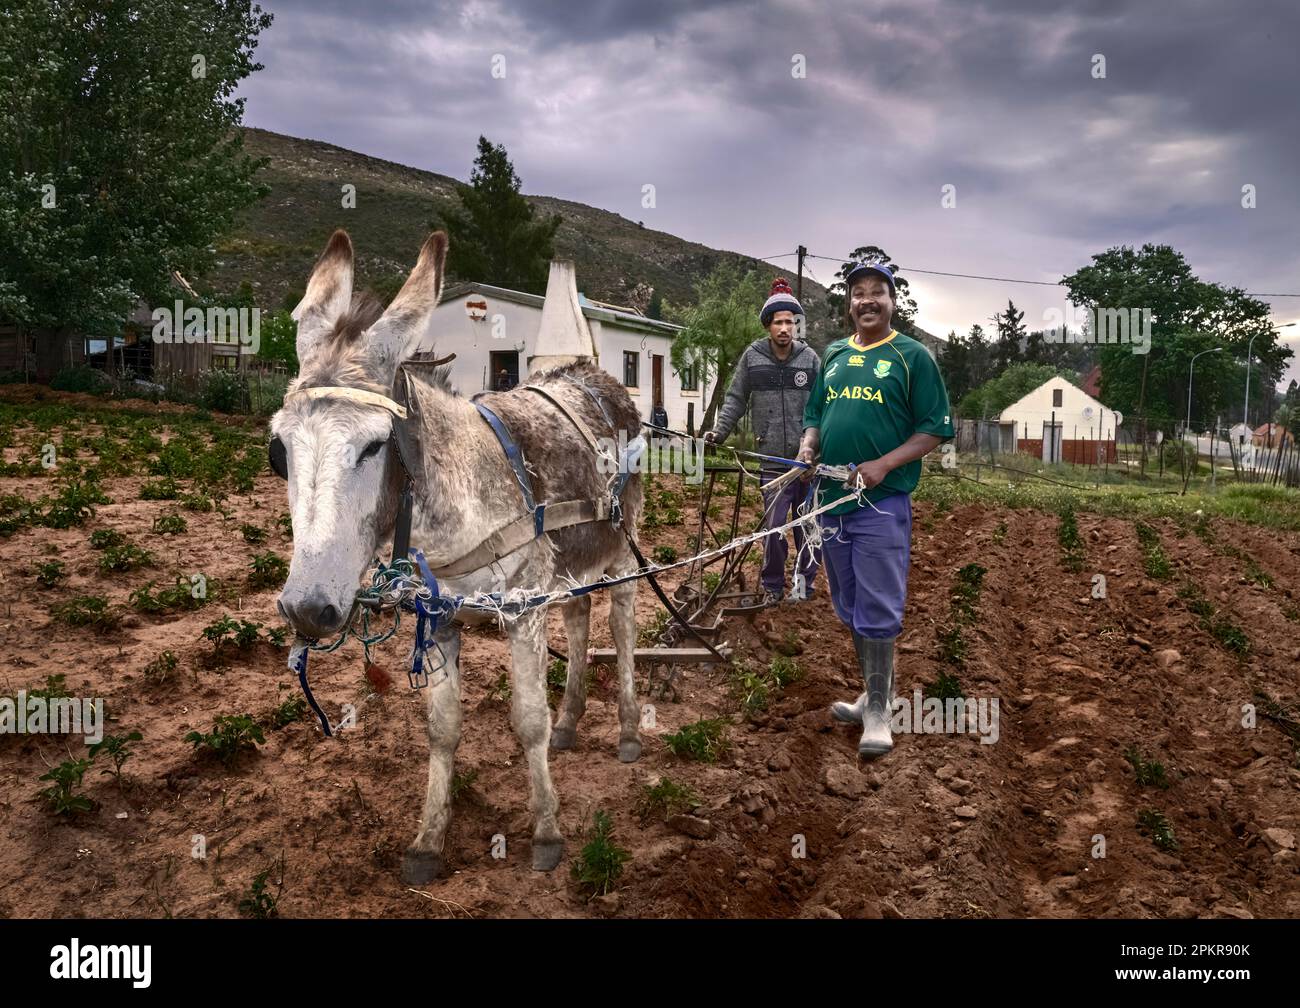 Un fermier de Haarlem, pleurs sa patates portant son maillot de rugby  Springbok Photo Stock - Alamy